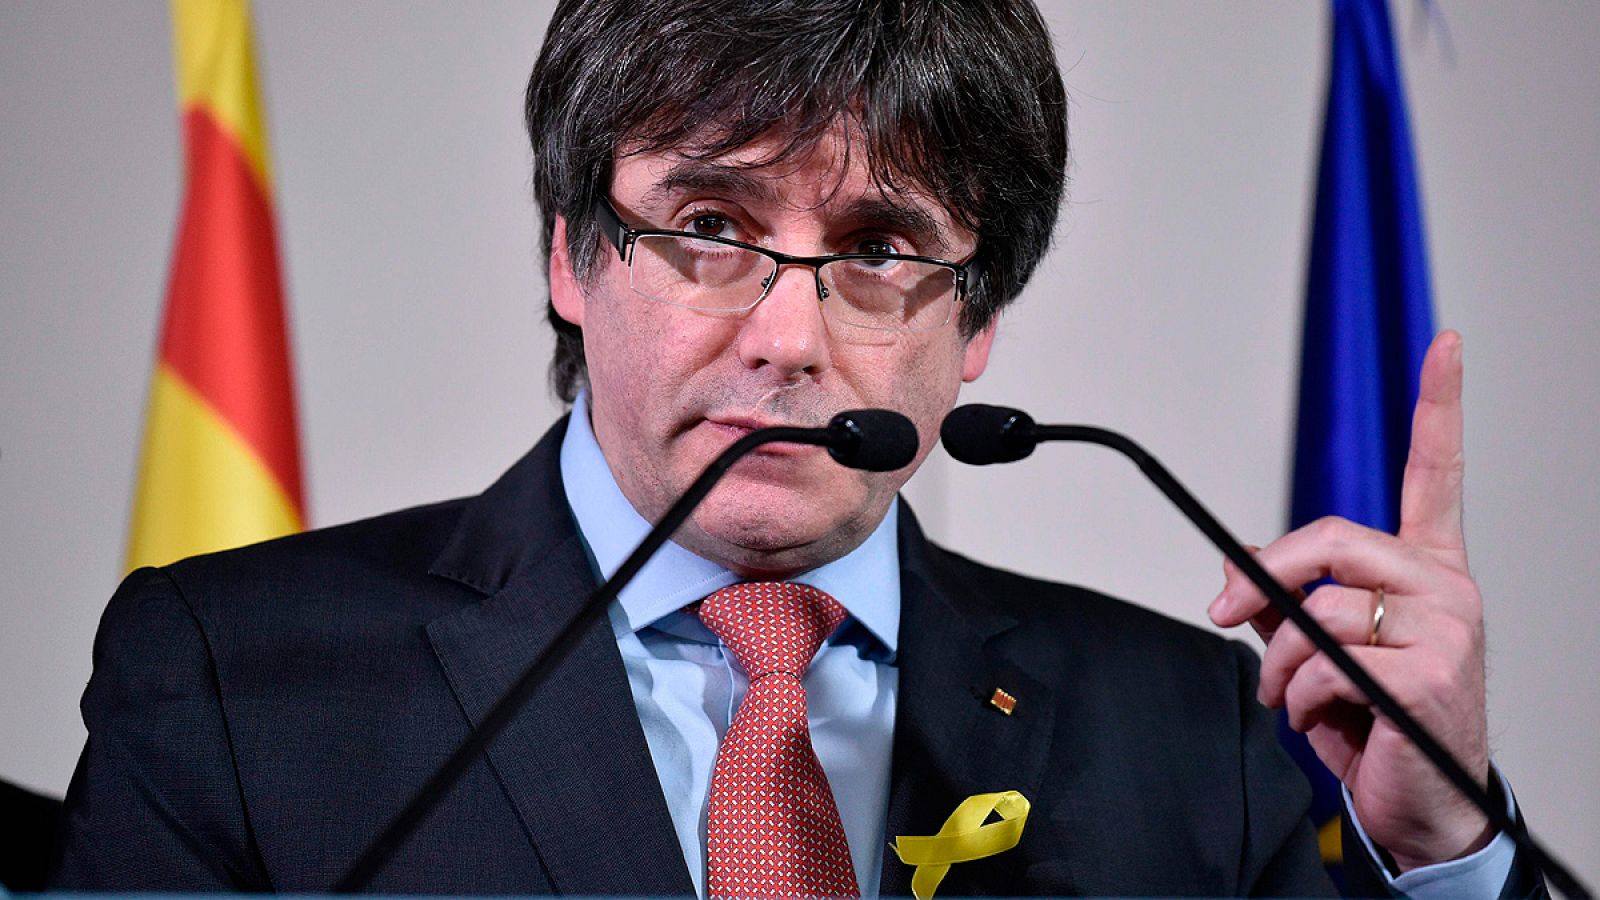 Carles Puigdemont interviene desde Bruselas tras las elecciones catalanas del 21-D